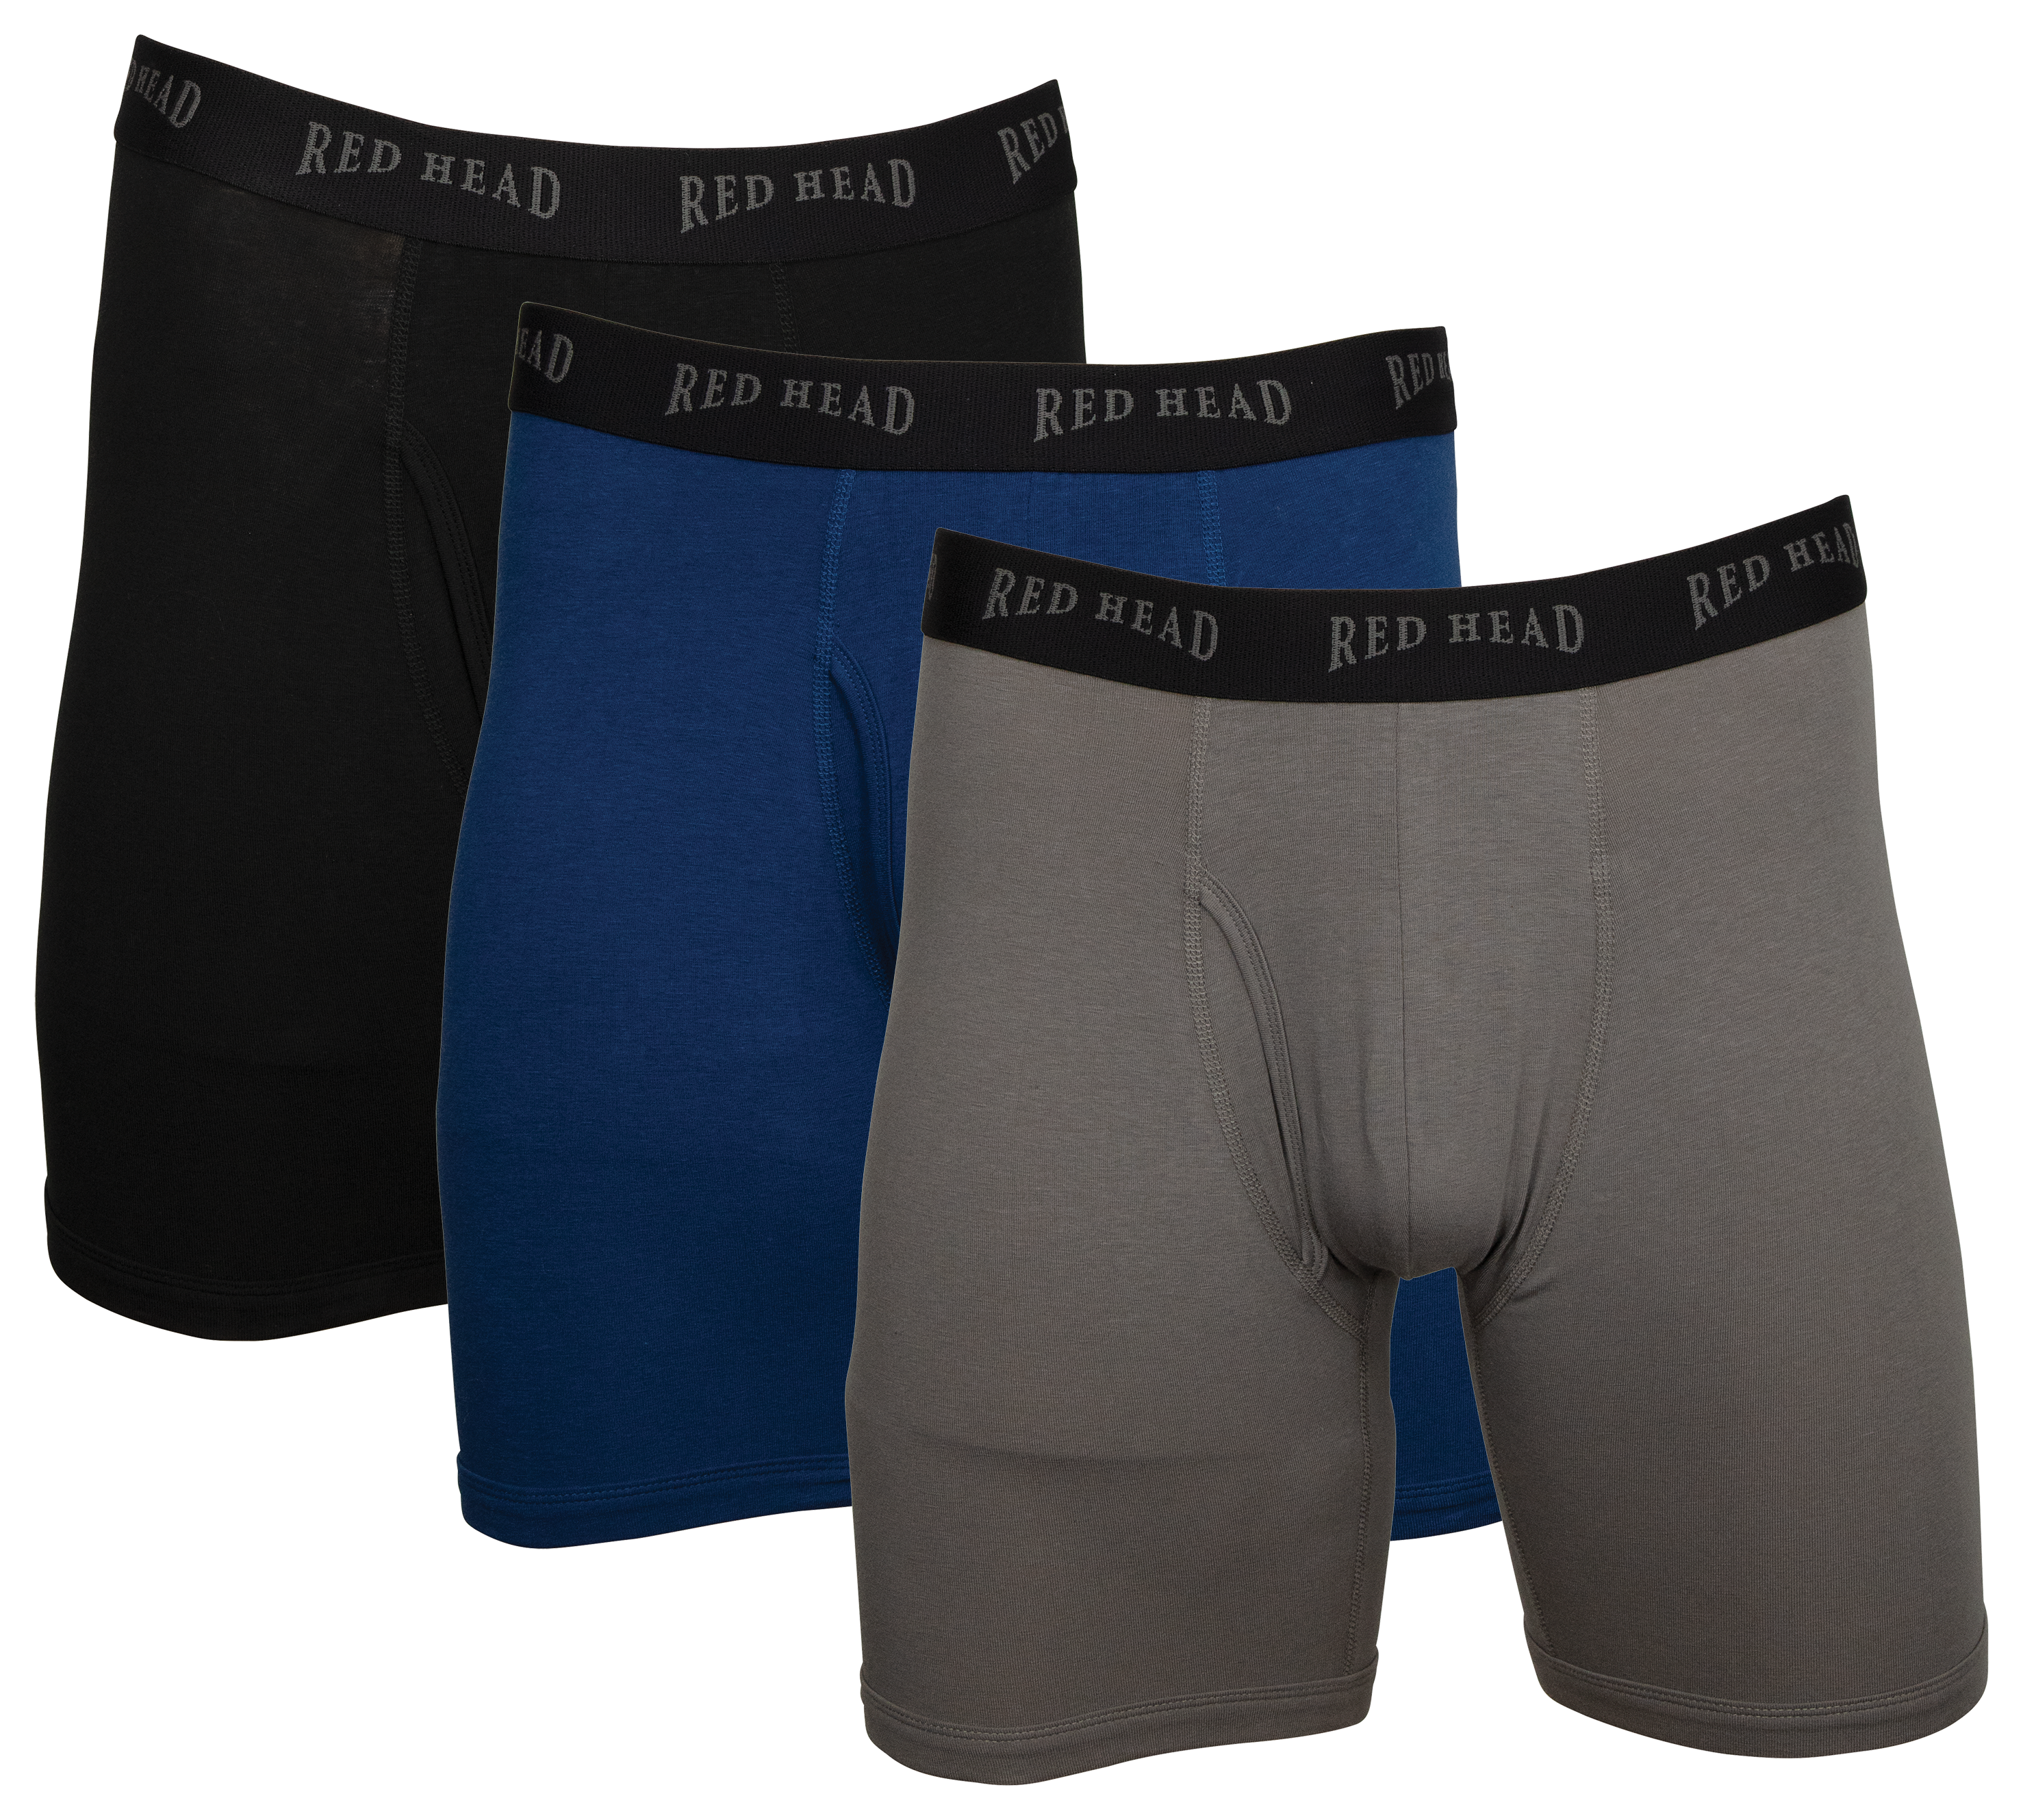 Underwear Expert on X: Briefs? Boxer briefs? Trunks? No matter